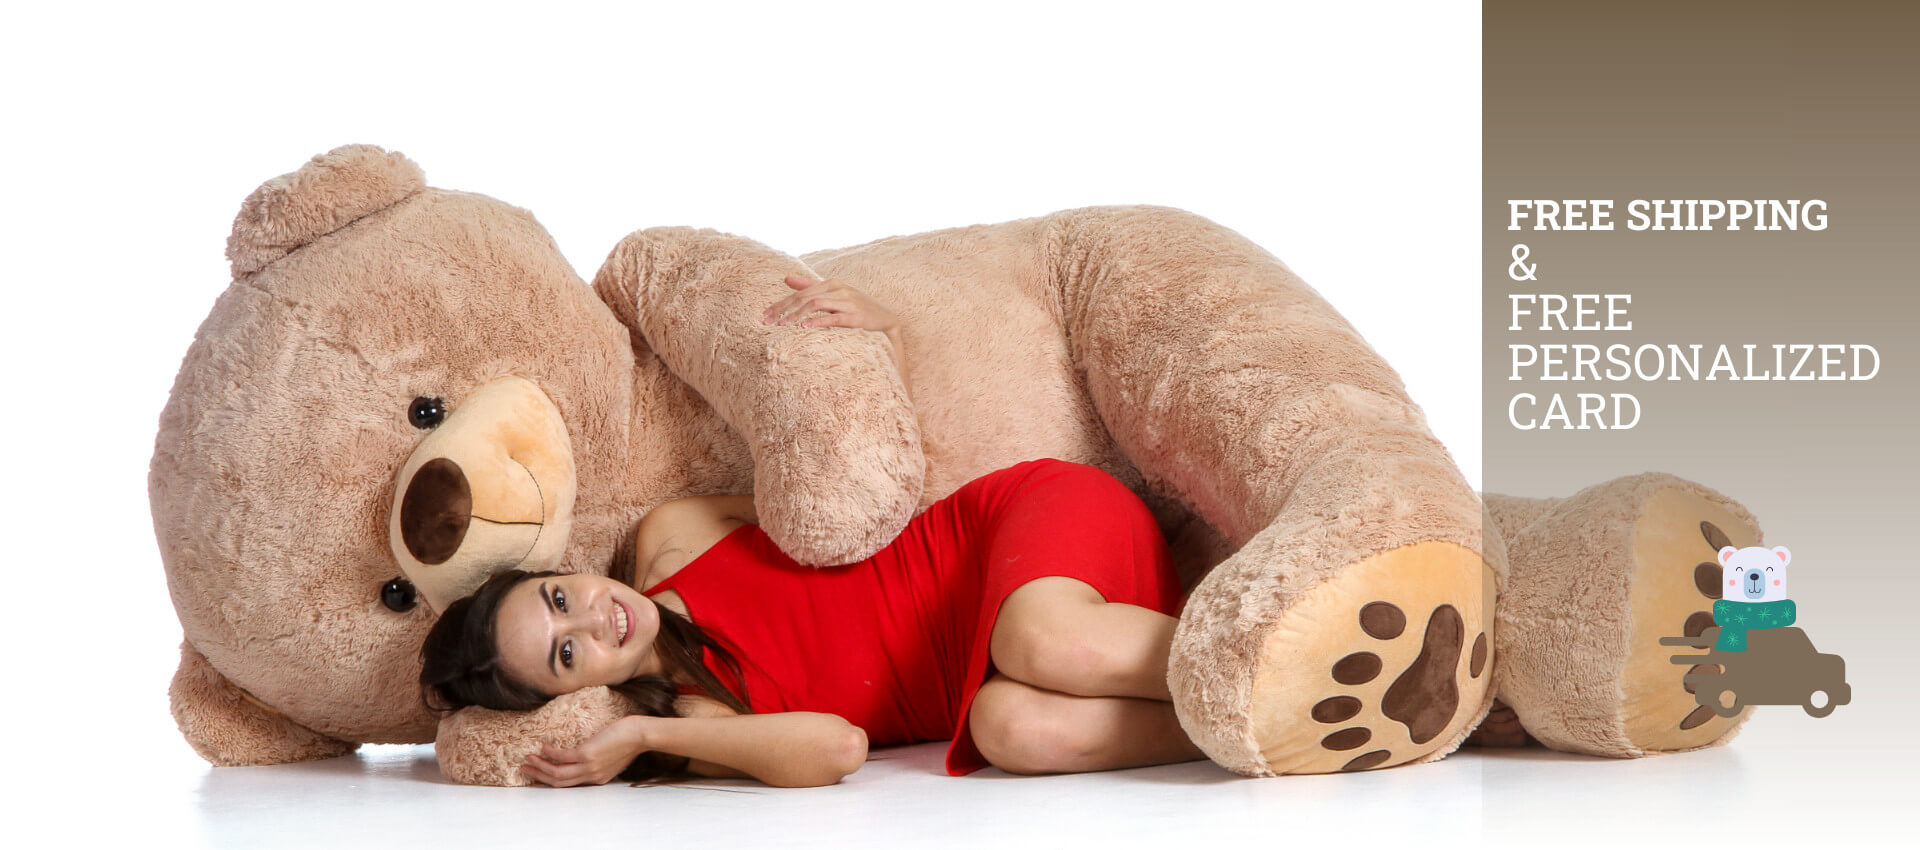 send a giant teddy bear